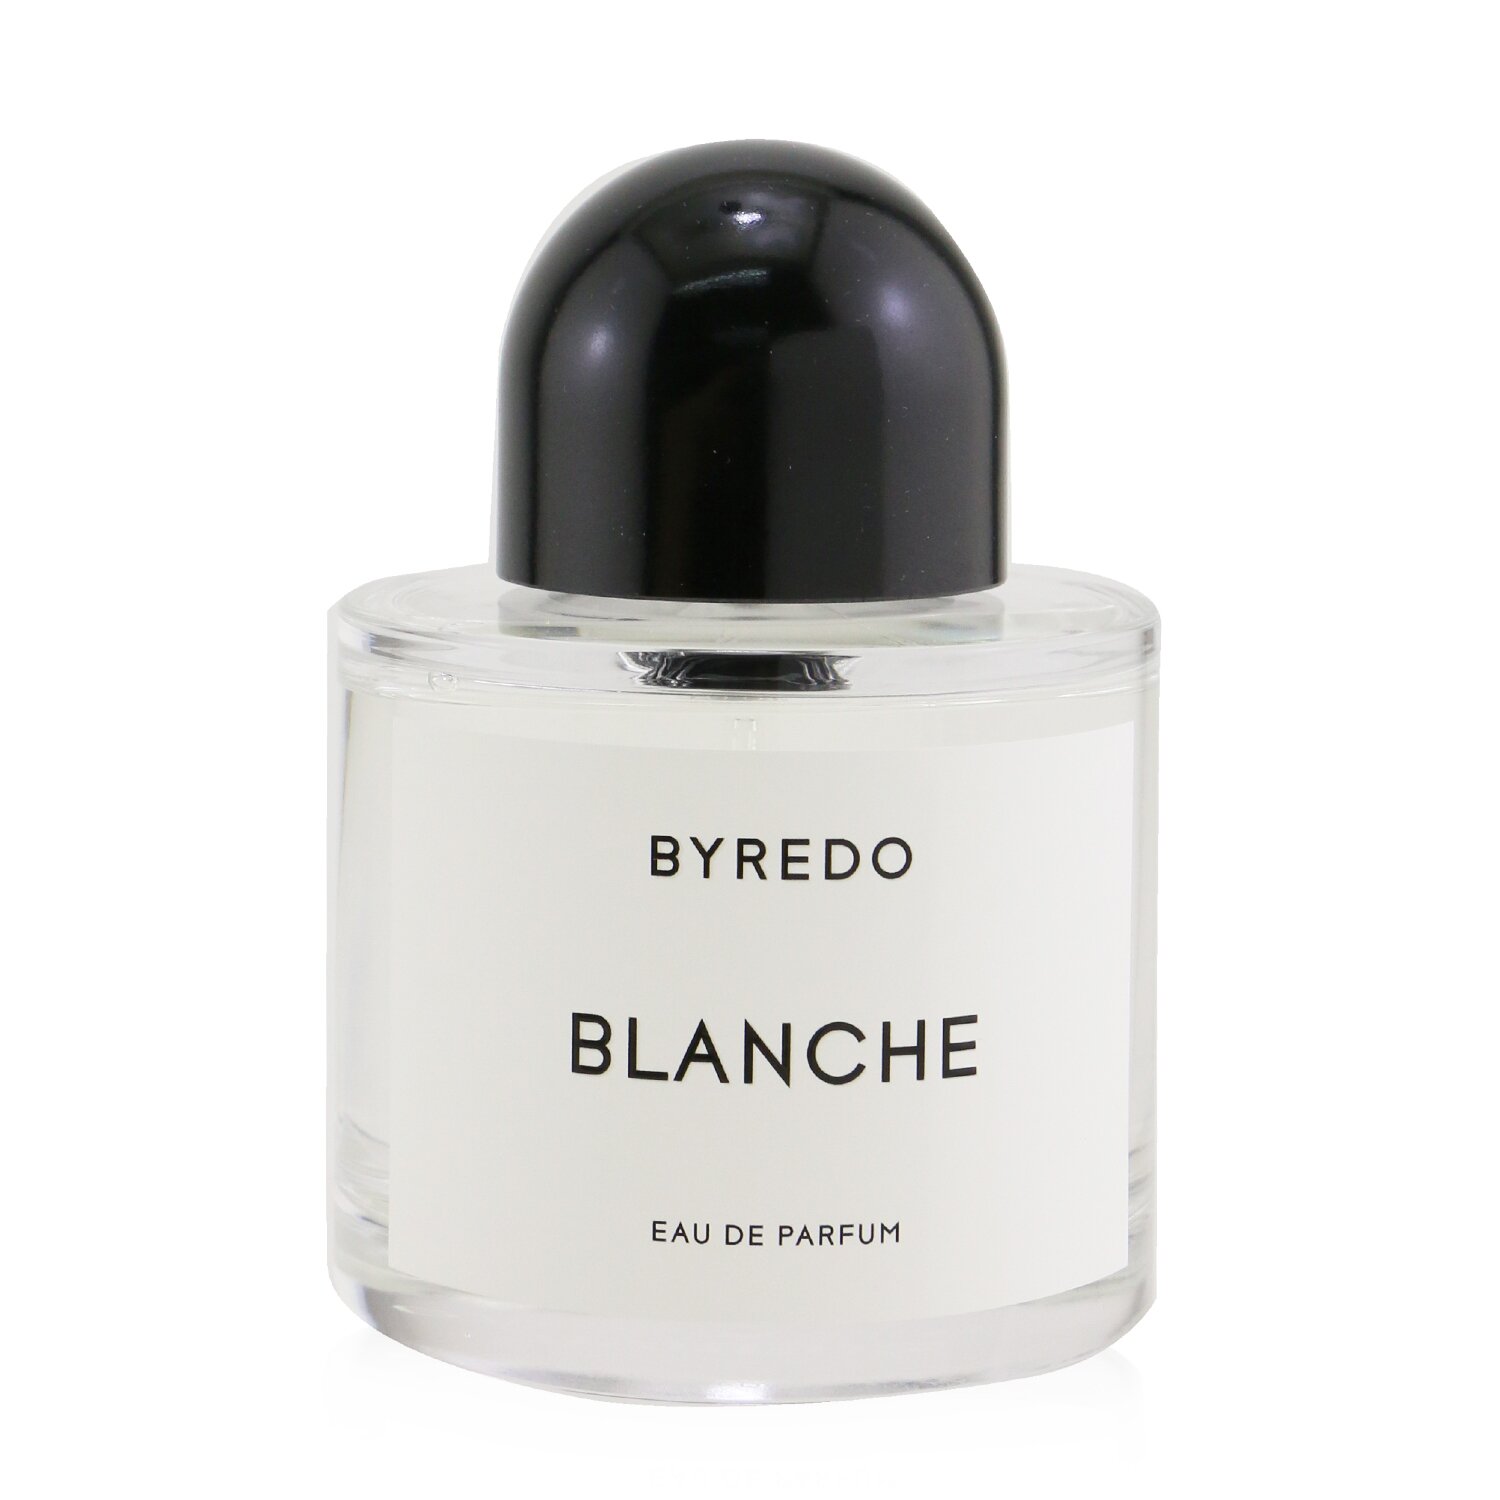 Photos - Women's Fragrance Byredo Blanche Eau De Parfum 